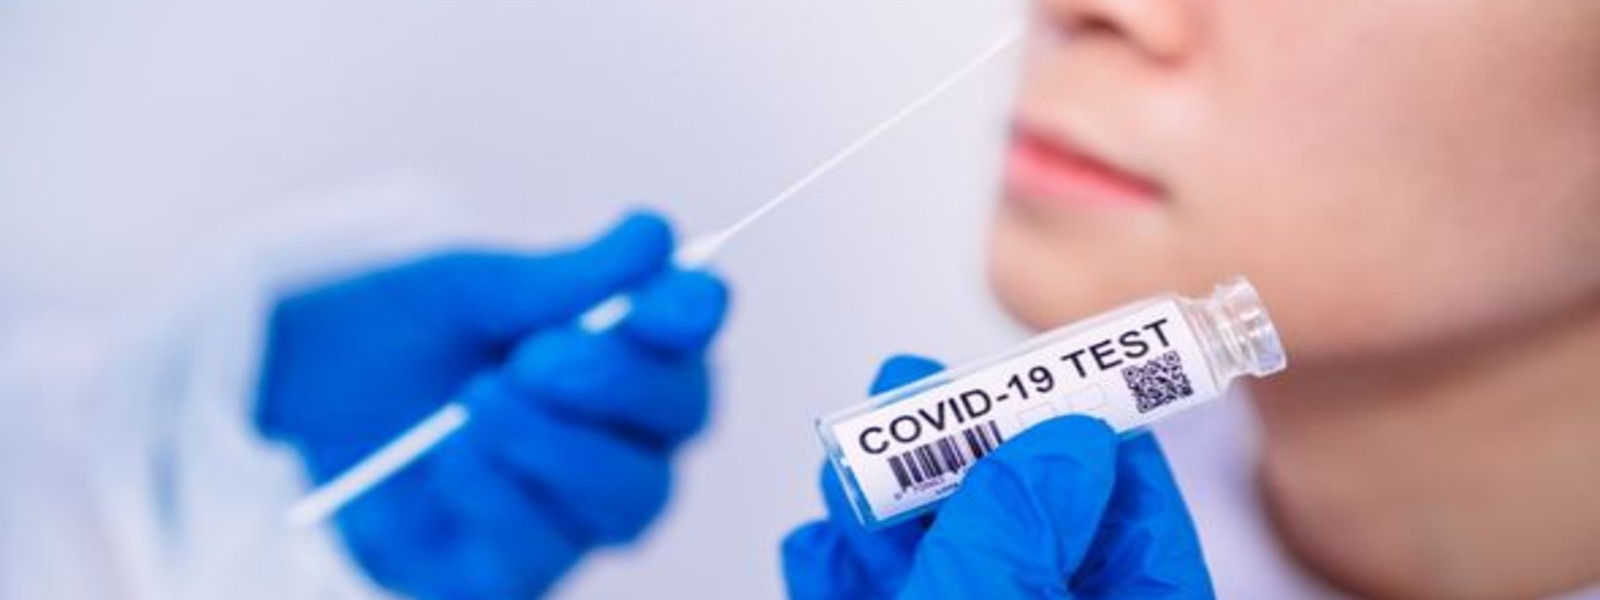 கொழும்பில் எழுமாறான PCR பரிசோதனைகள் அதிகரிப்பு